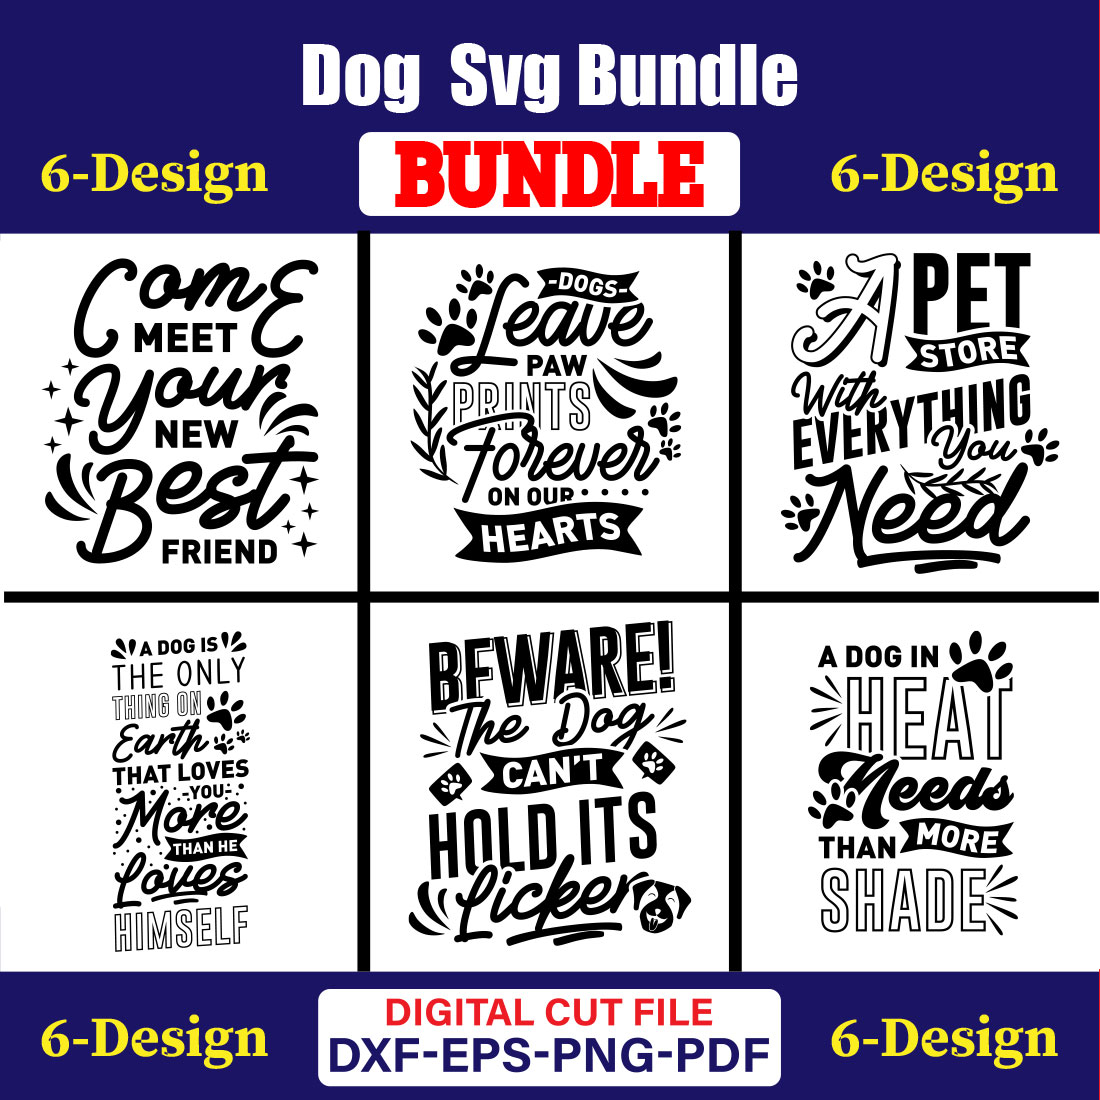 Dog SVG T-shirt Design Bundle Vol-20 cover image.